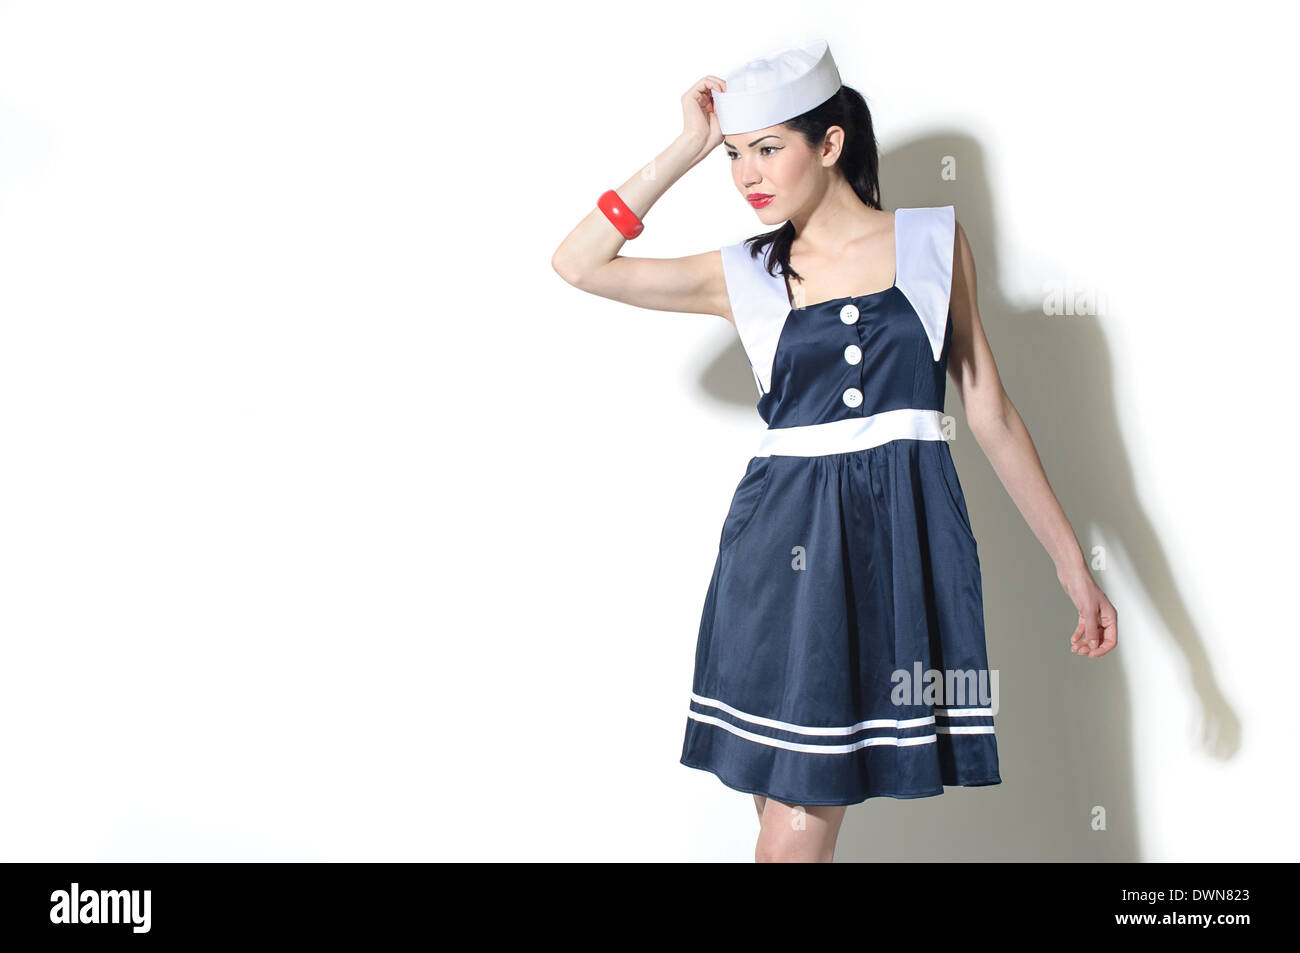 Un modello femminile vestito con un abito da marinaio e marinaio hat in posa, un retro vintage fashion concept Foto Stock